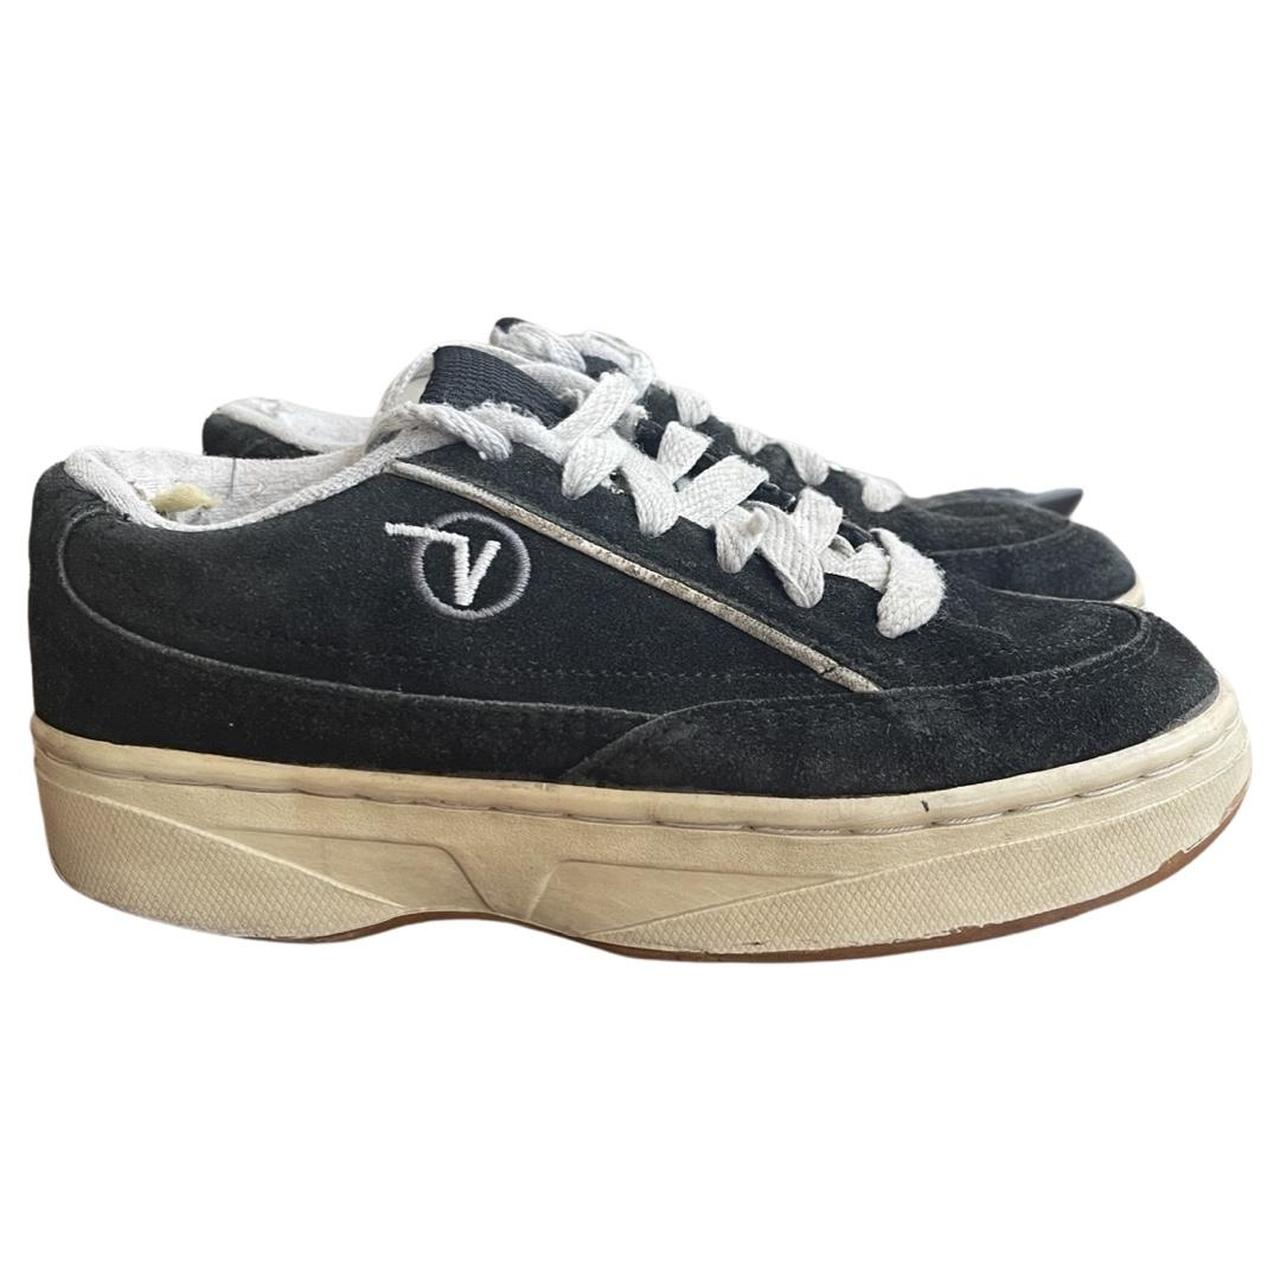 Welsprekend Avonturier Aanpassing Vintage Vans Skate Shoes 90s Black Suede... - Depop